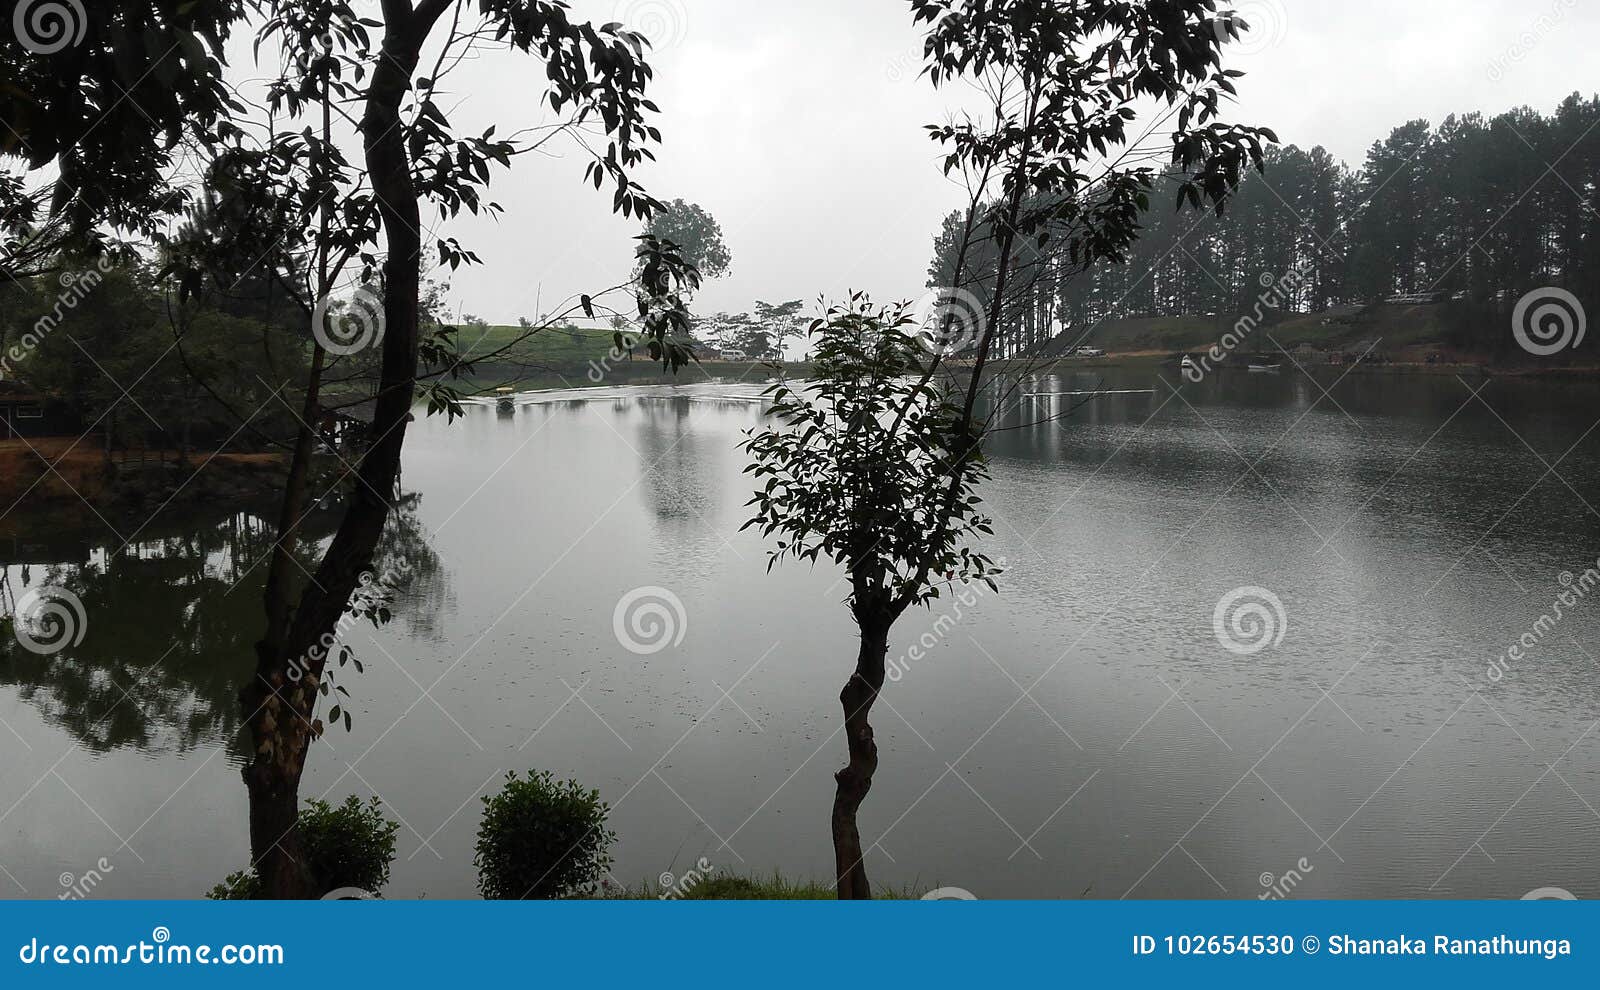 sembuwatta lake, elkaduwa estate, sri lanka